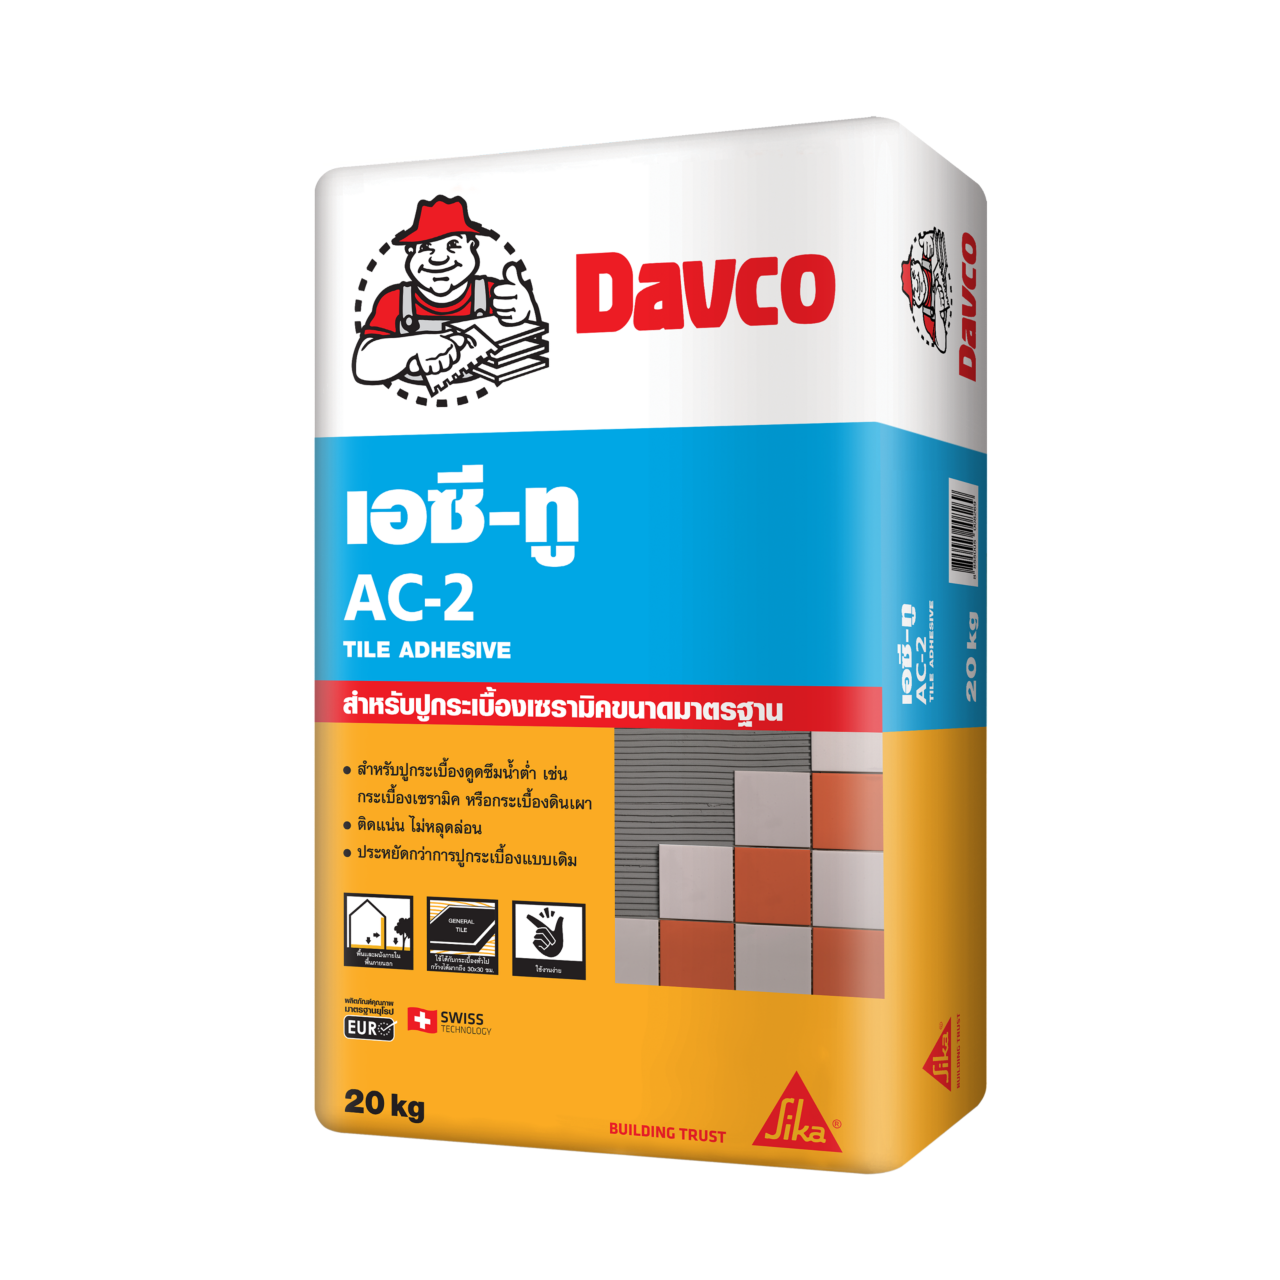 Davco AC-2